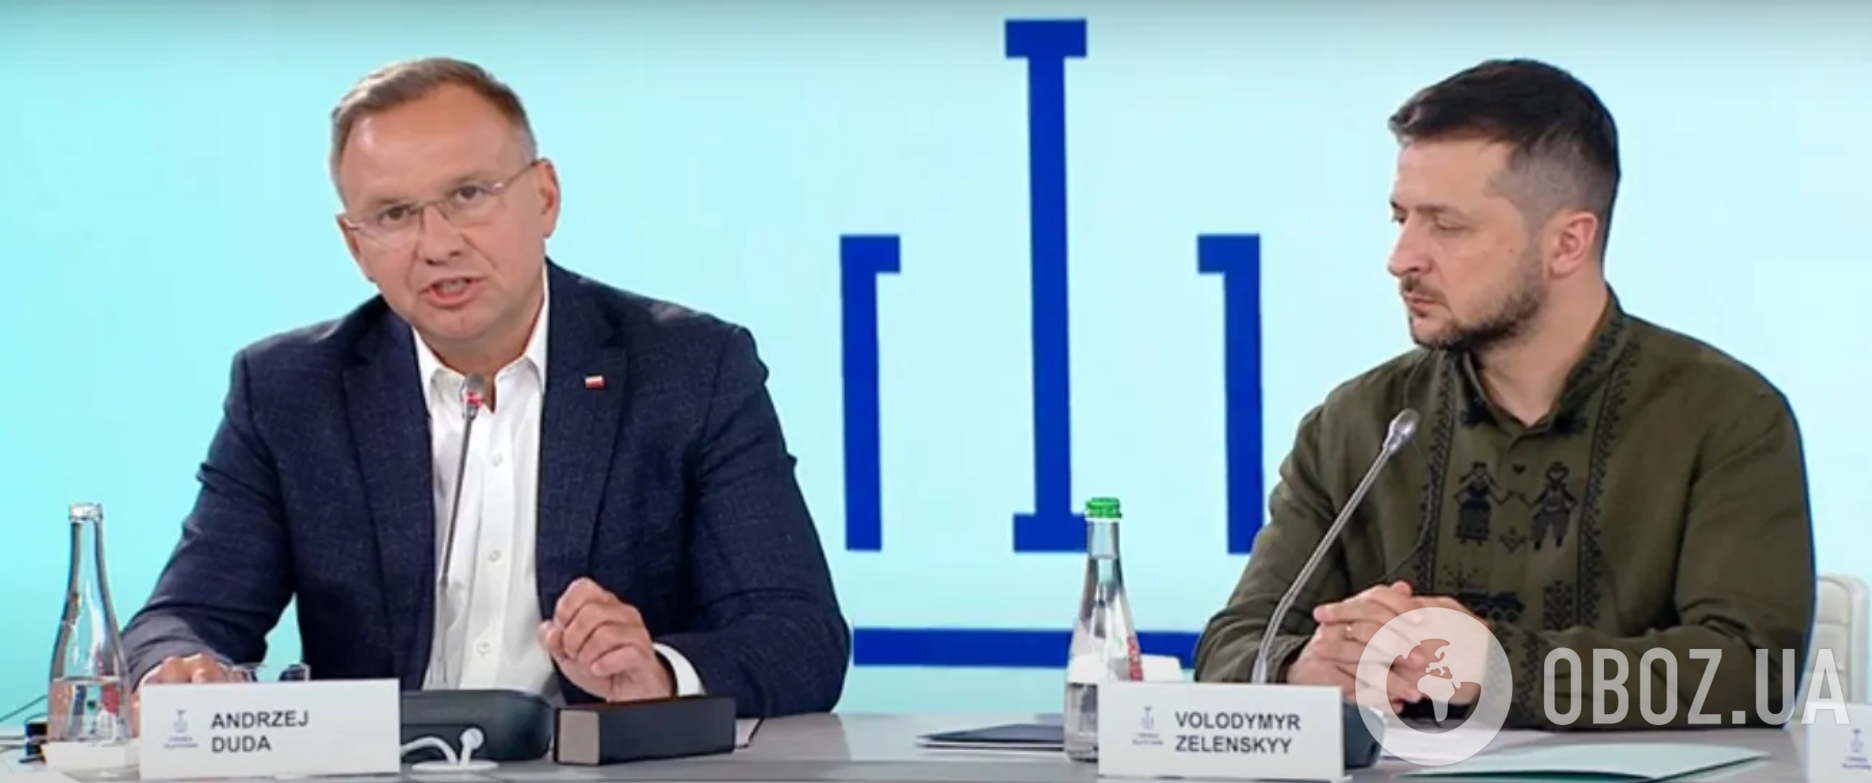 Анджей Дуда и Владимир Зеленский на втором саммите Крымской платформы